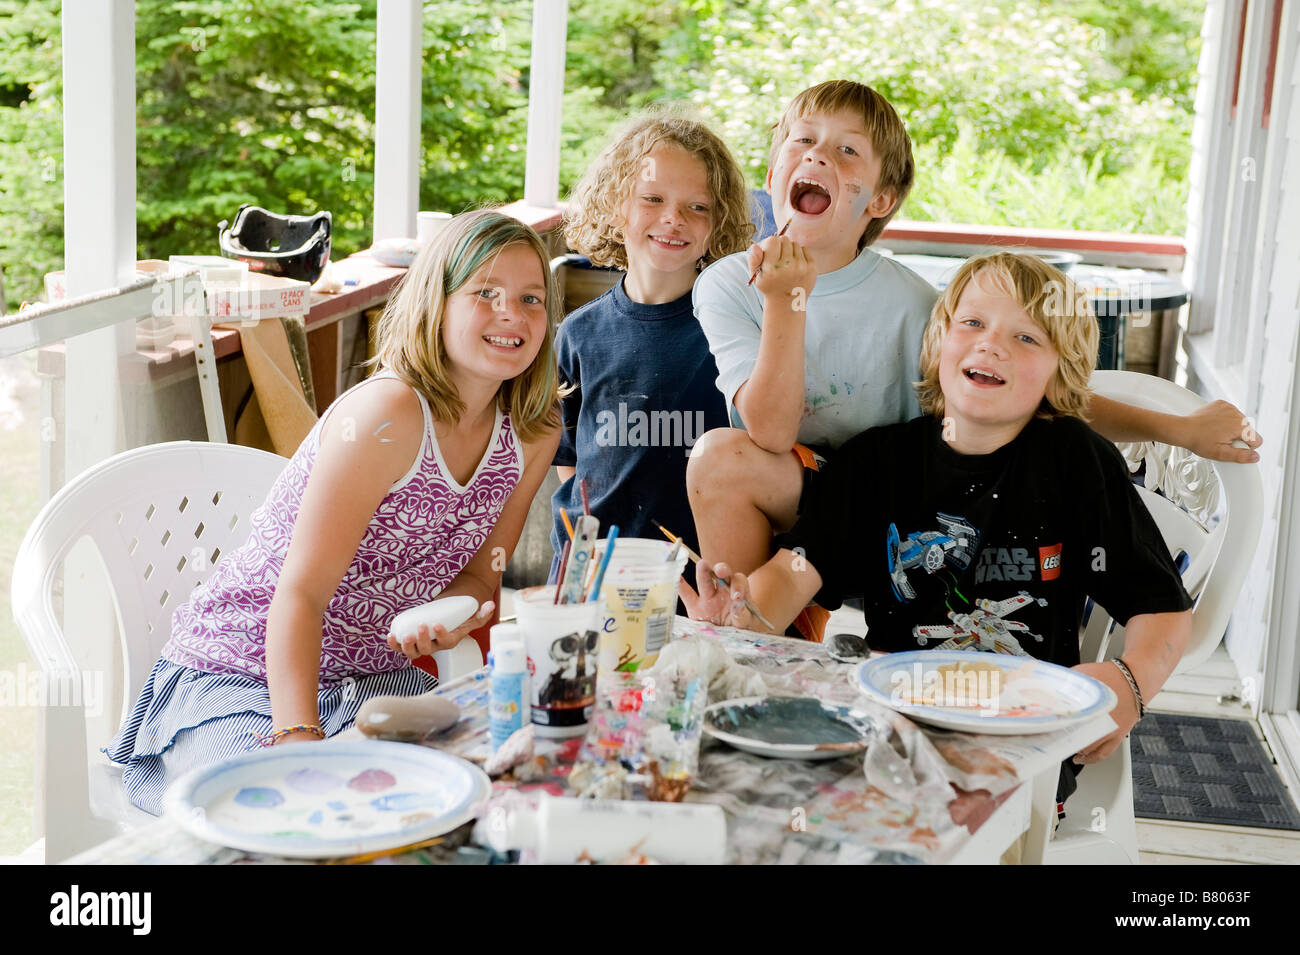 Un portrait de quatre amis d'enfance à proximité. Banque D'Images